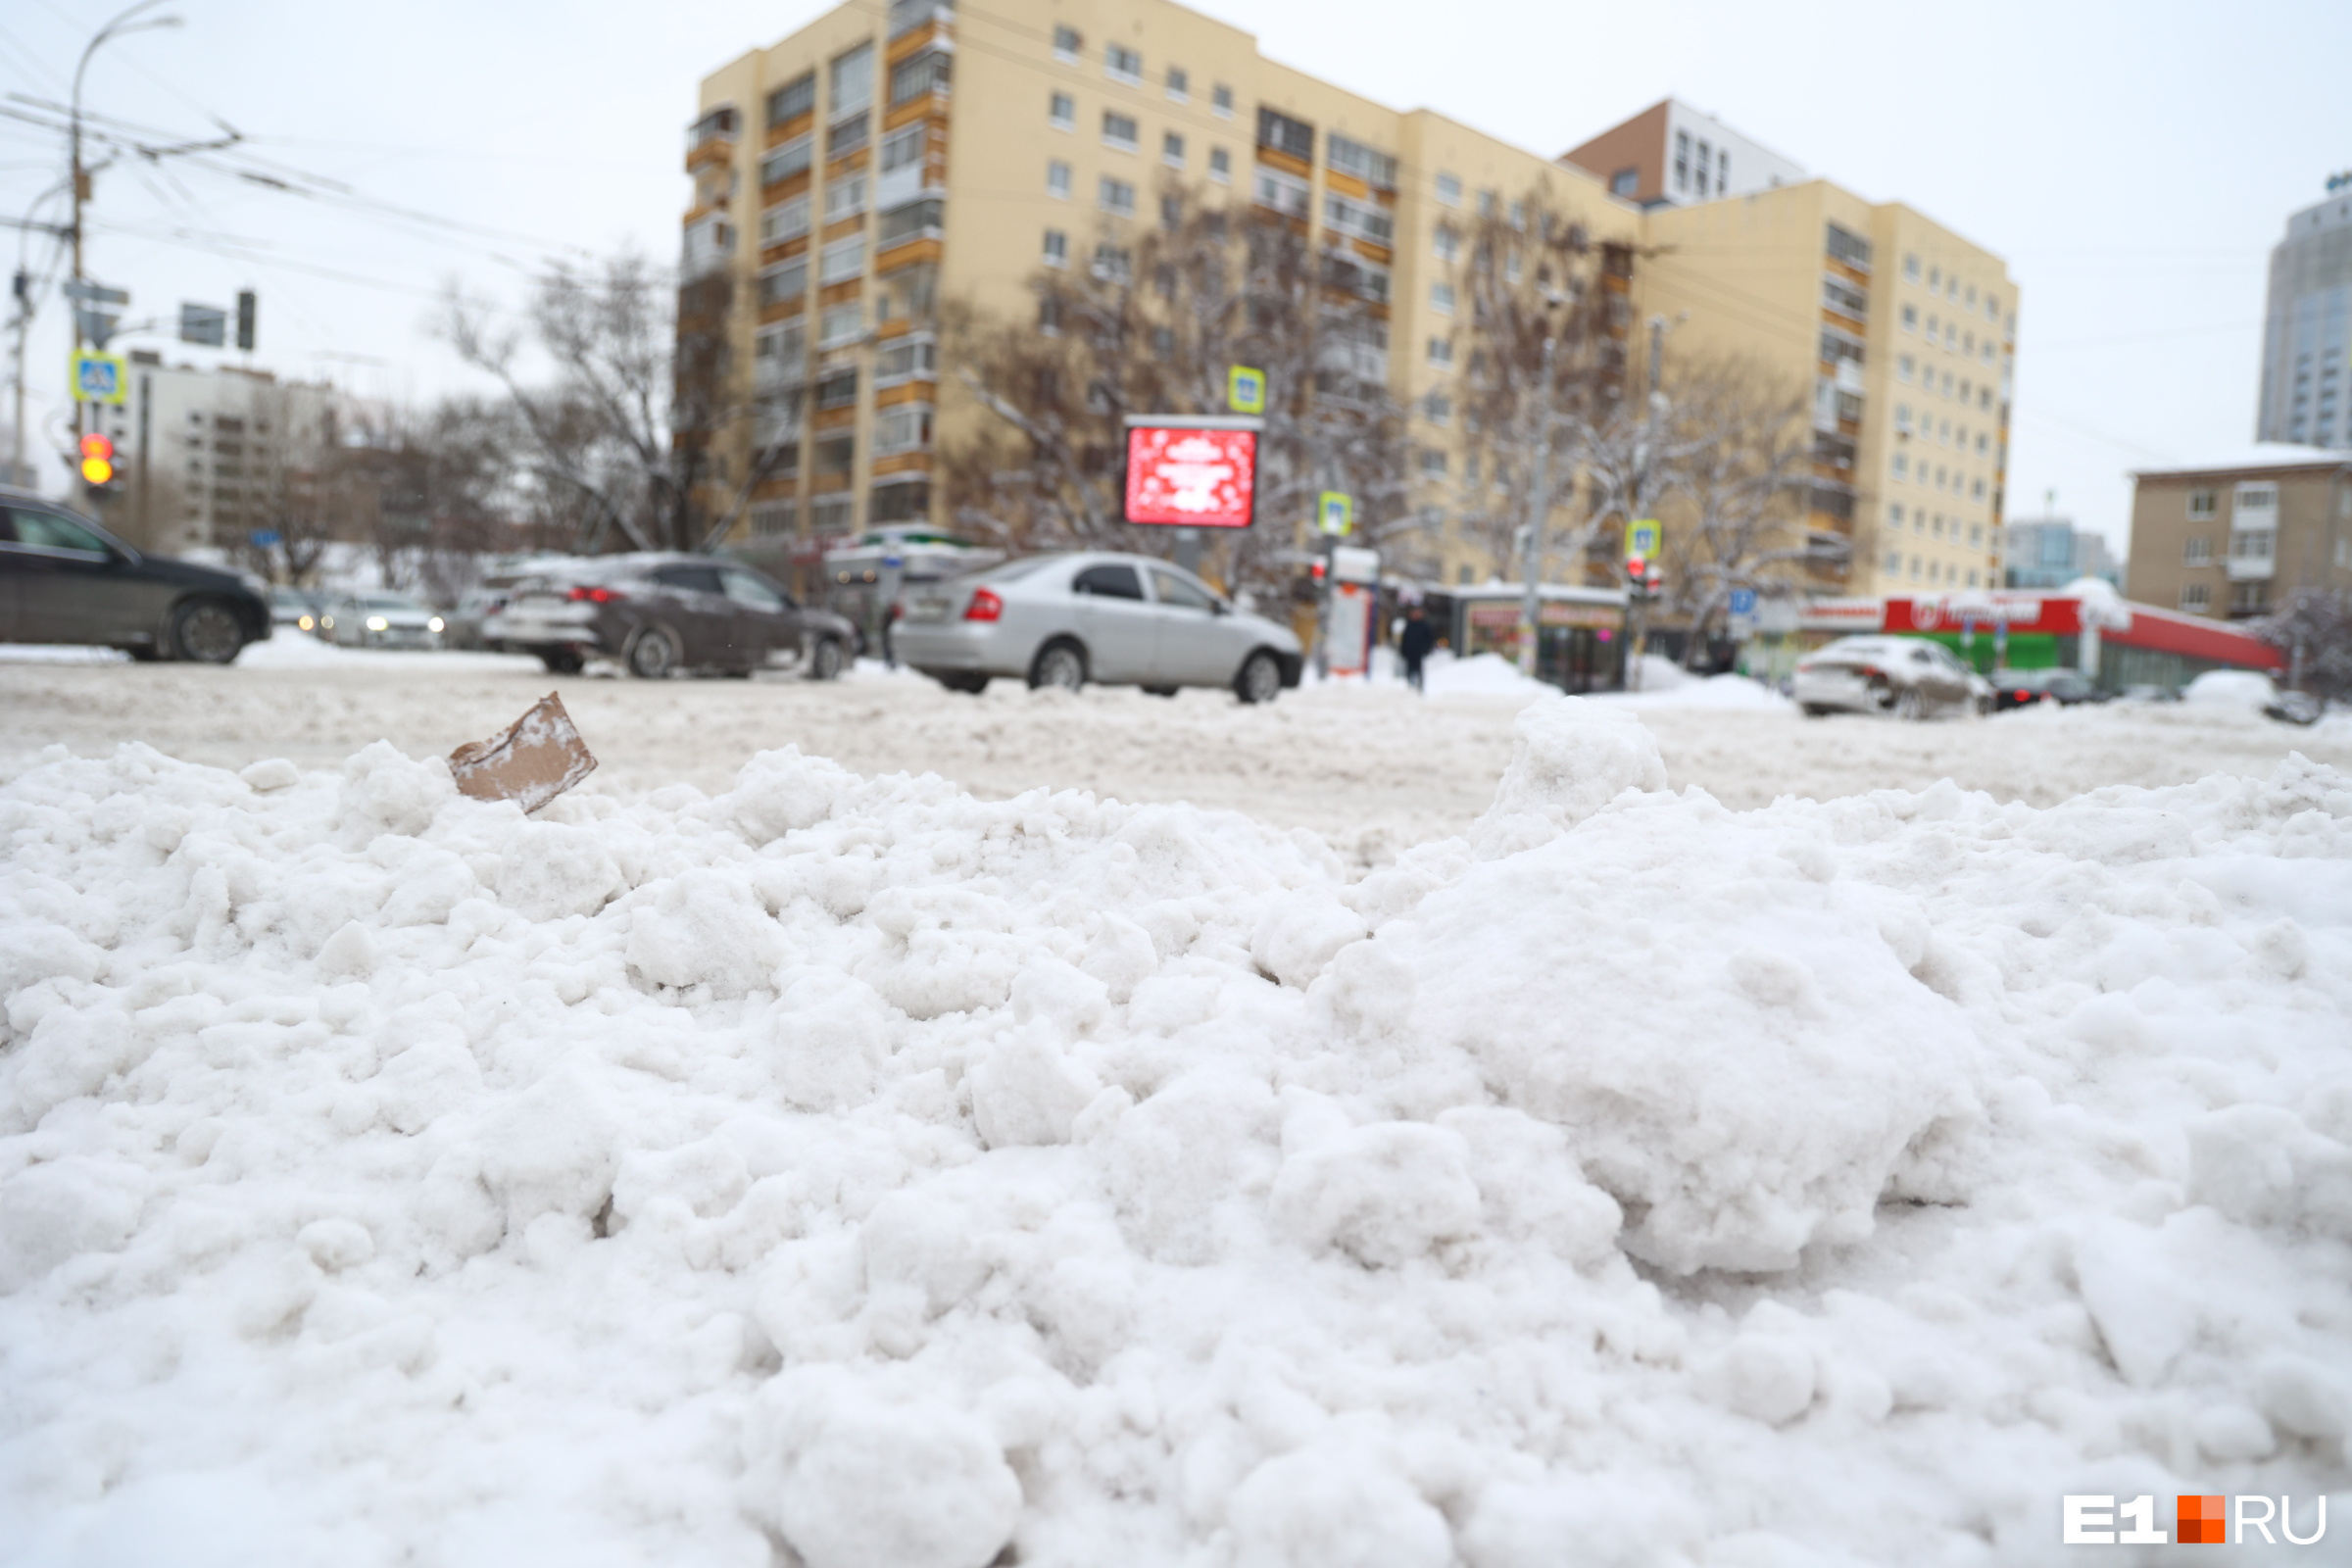 Неужели снегопад вернется? Екатеринбуржцы получили тревожное СМС о непогоде и заторах на дорогах